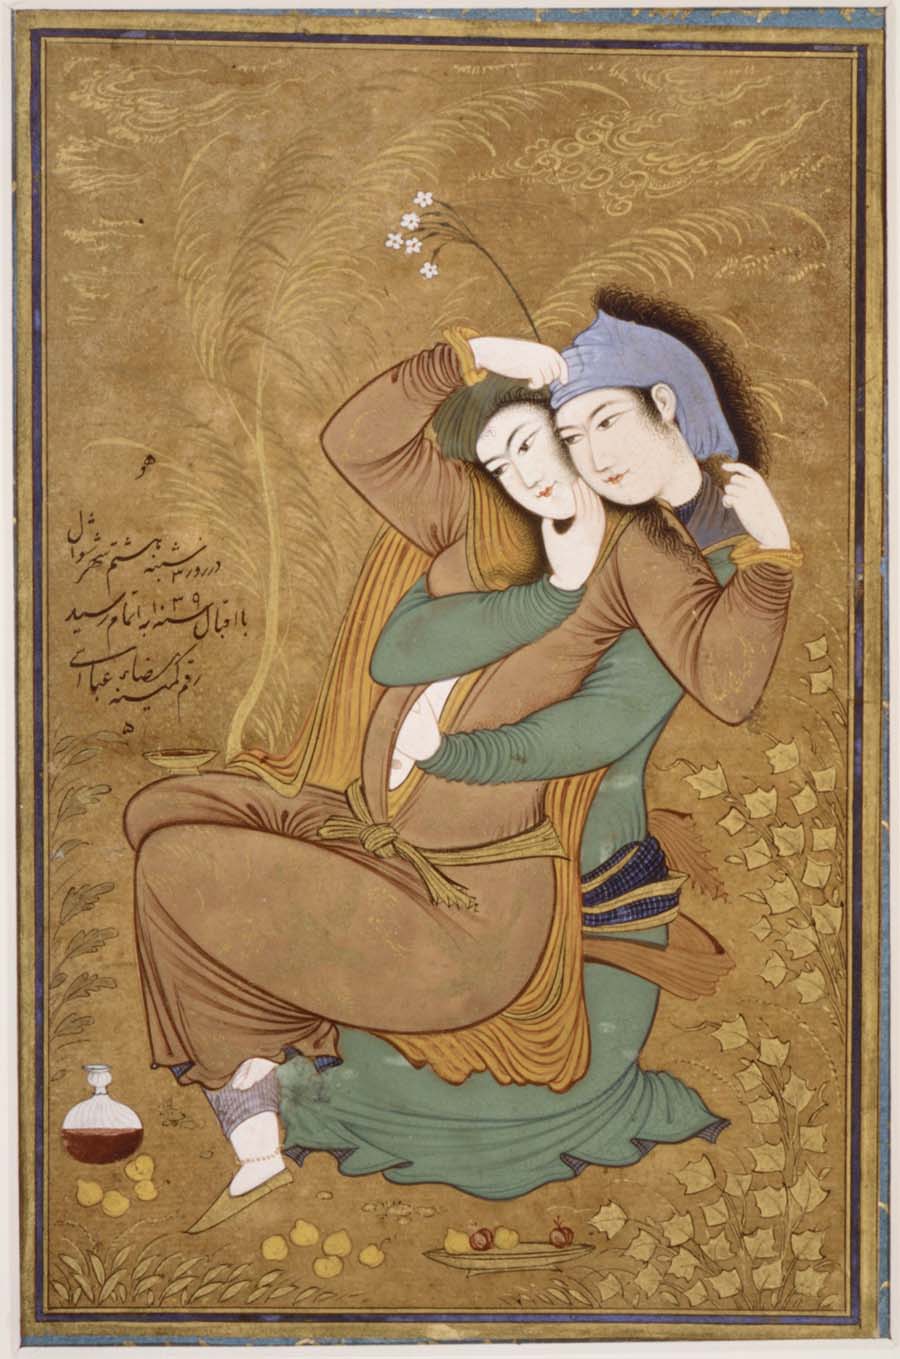 نگاره دو عاشق، اثر رضا عباسی سده دهم هجری، موزه متروپولیتن نیویورک